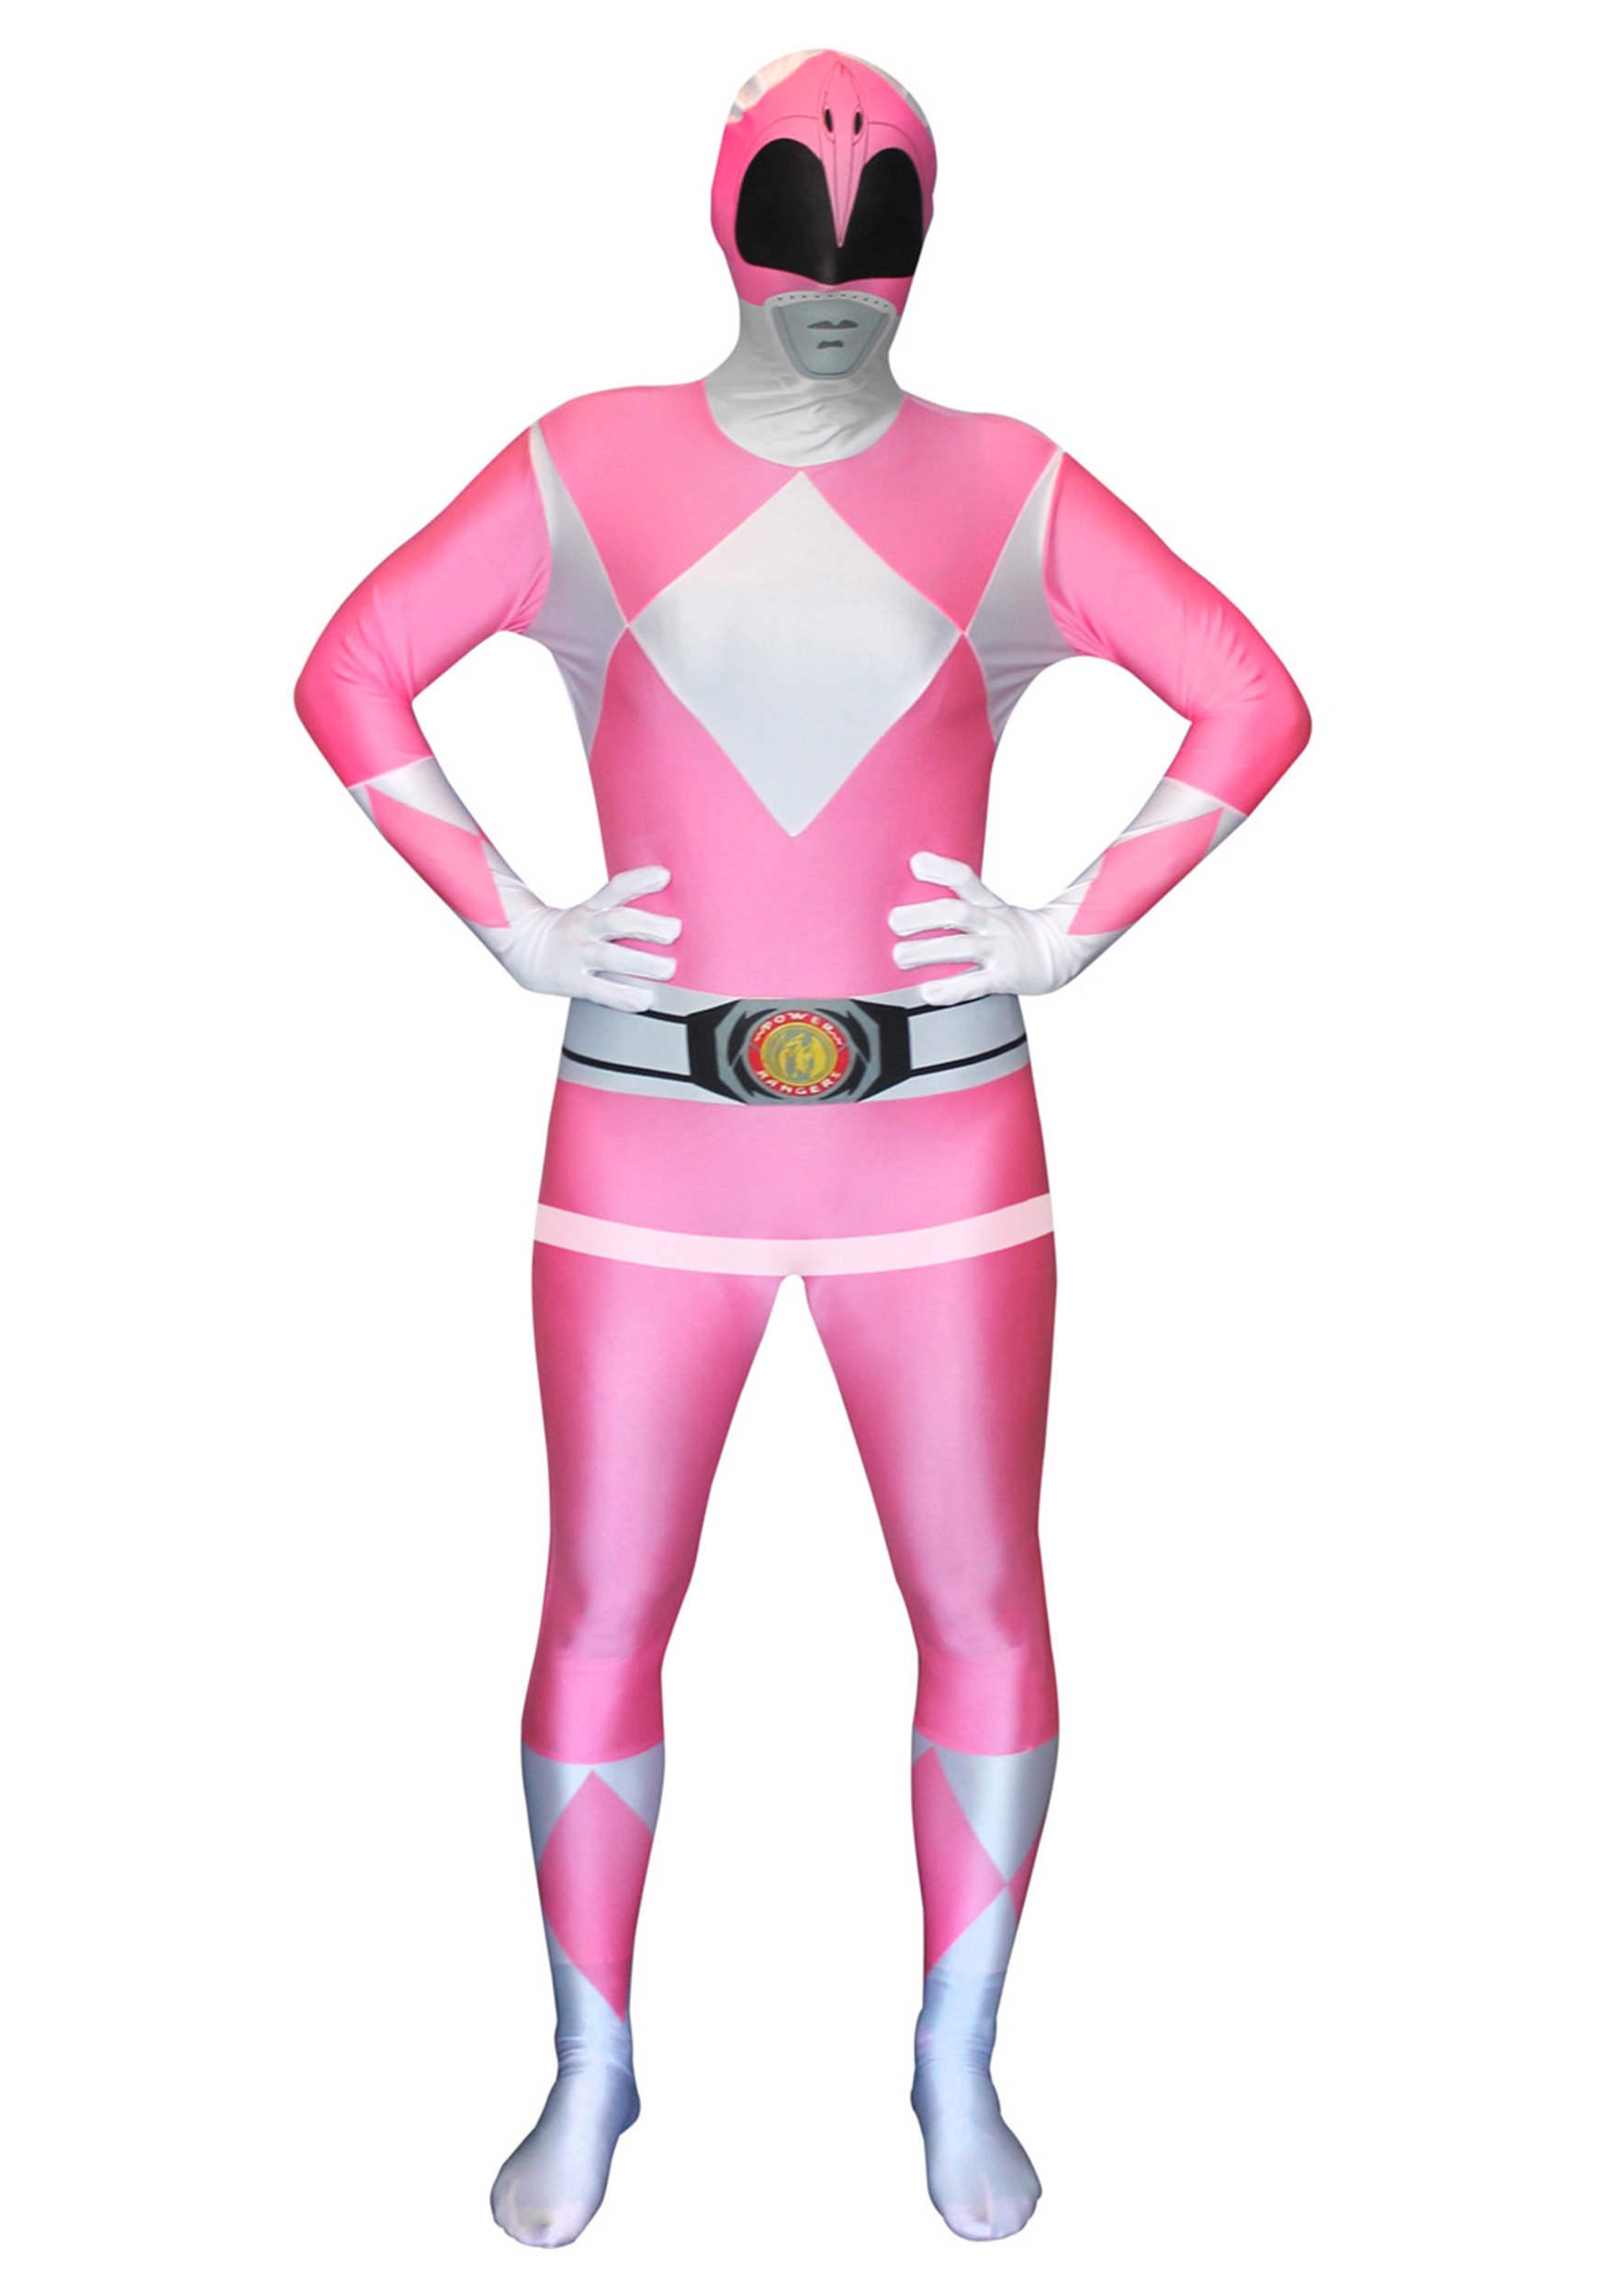 Power Rangers: Pink Ranger Morphsuit